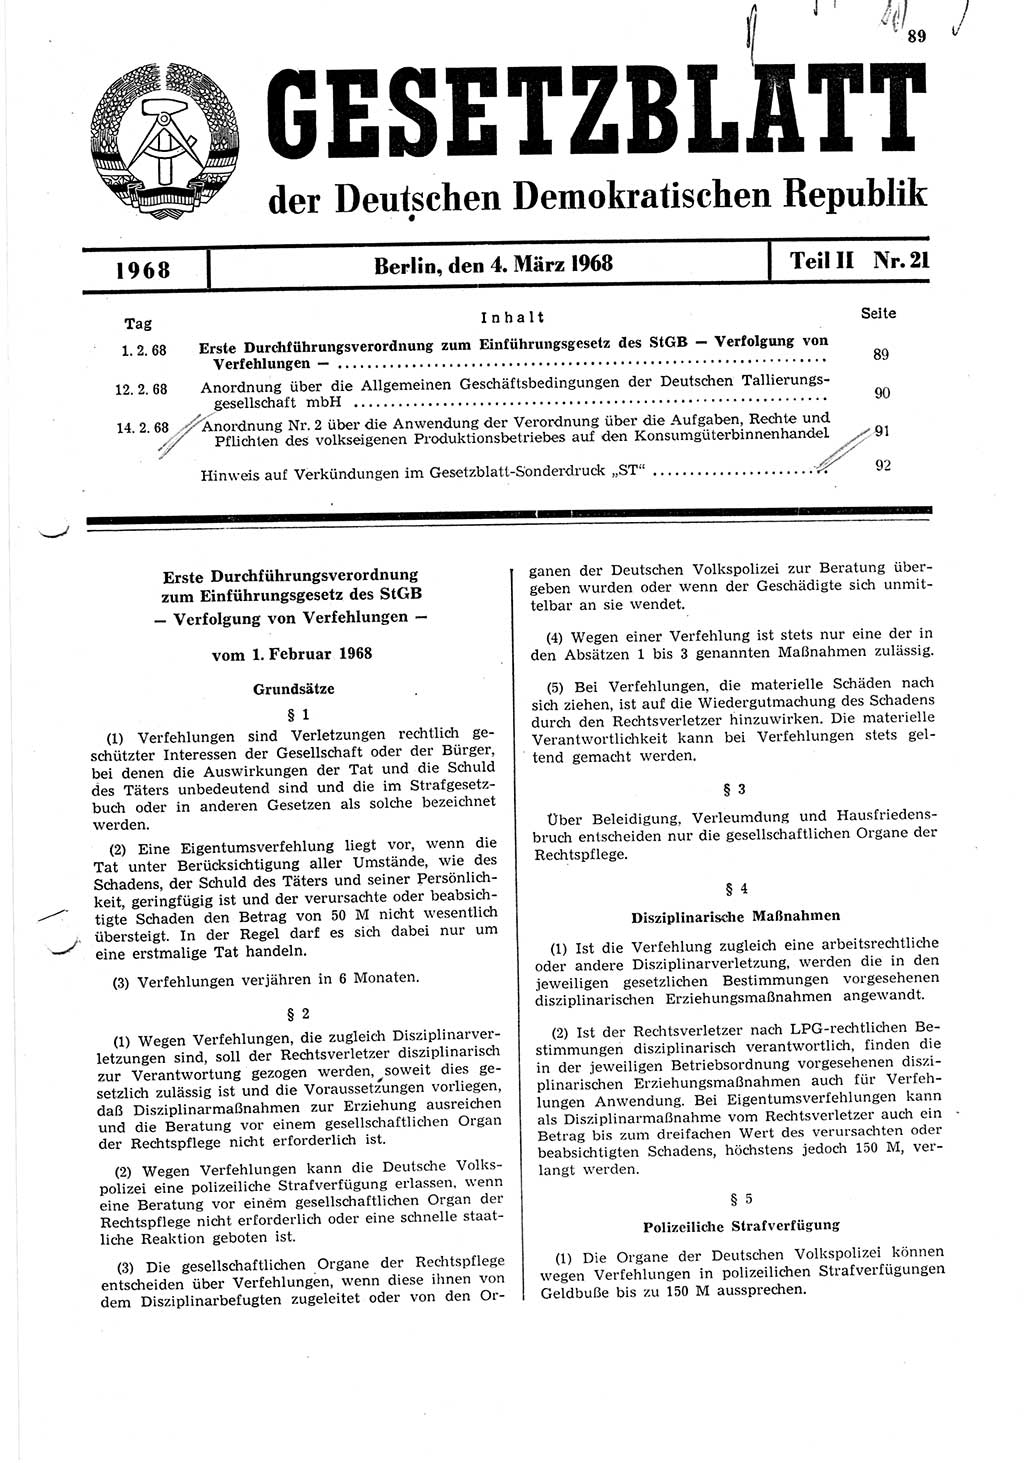 Gesetzblatt (GBl.) der Deutschen Demokratischen Republik (DDR) Teil ⅠⅠ 1968, Seite 89 (GBl. DDR ⅠⅠ 1968, S. 89)